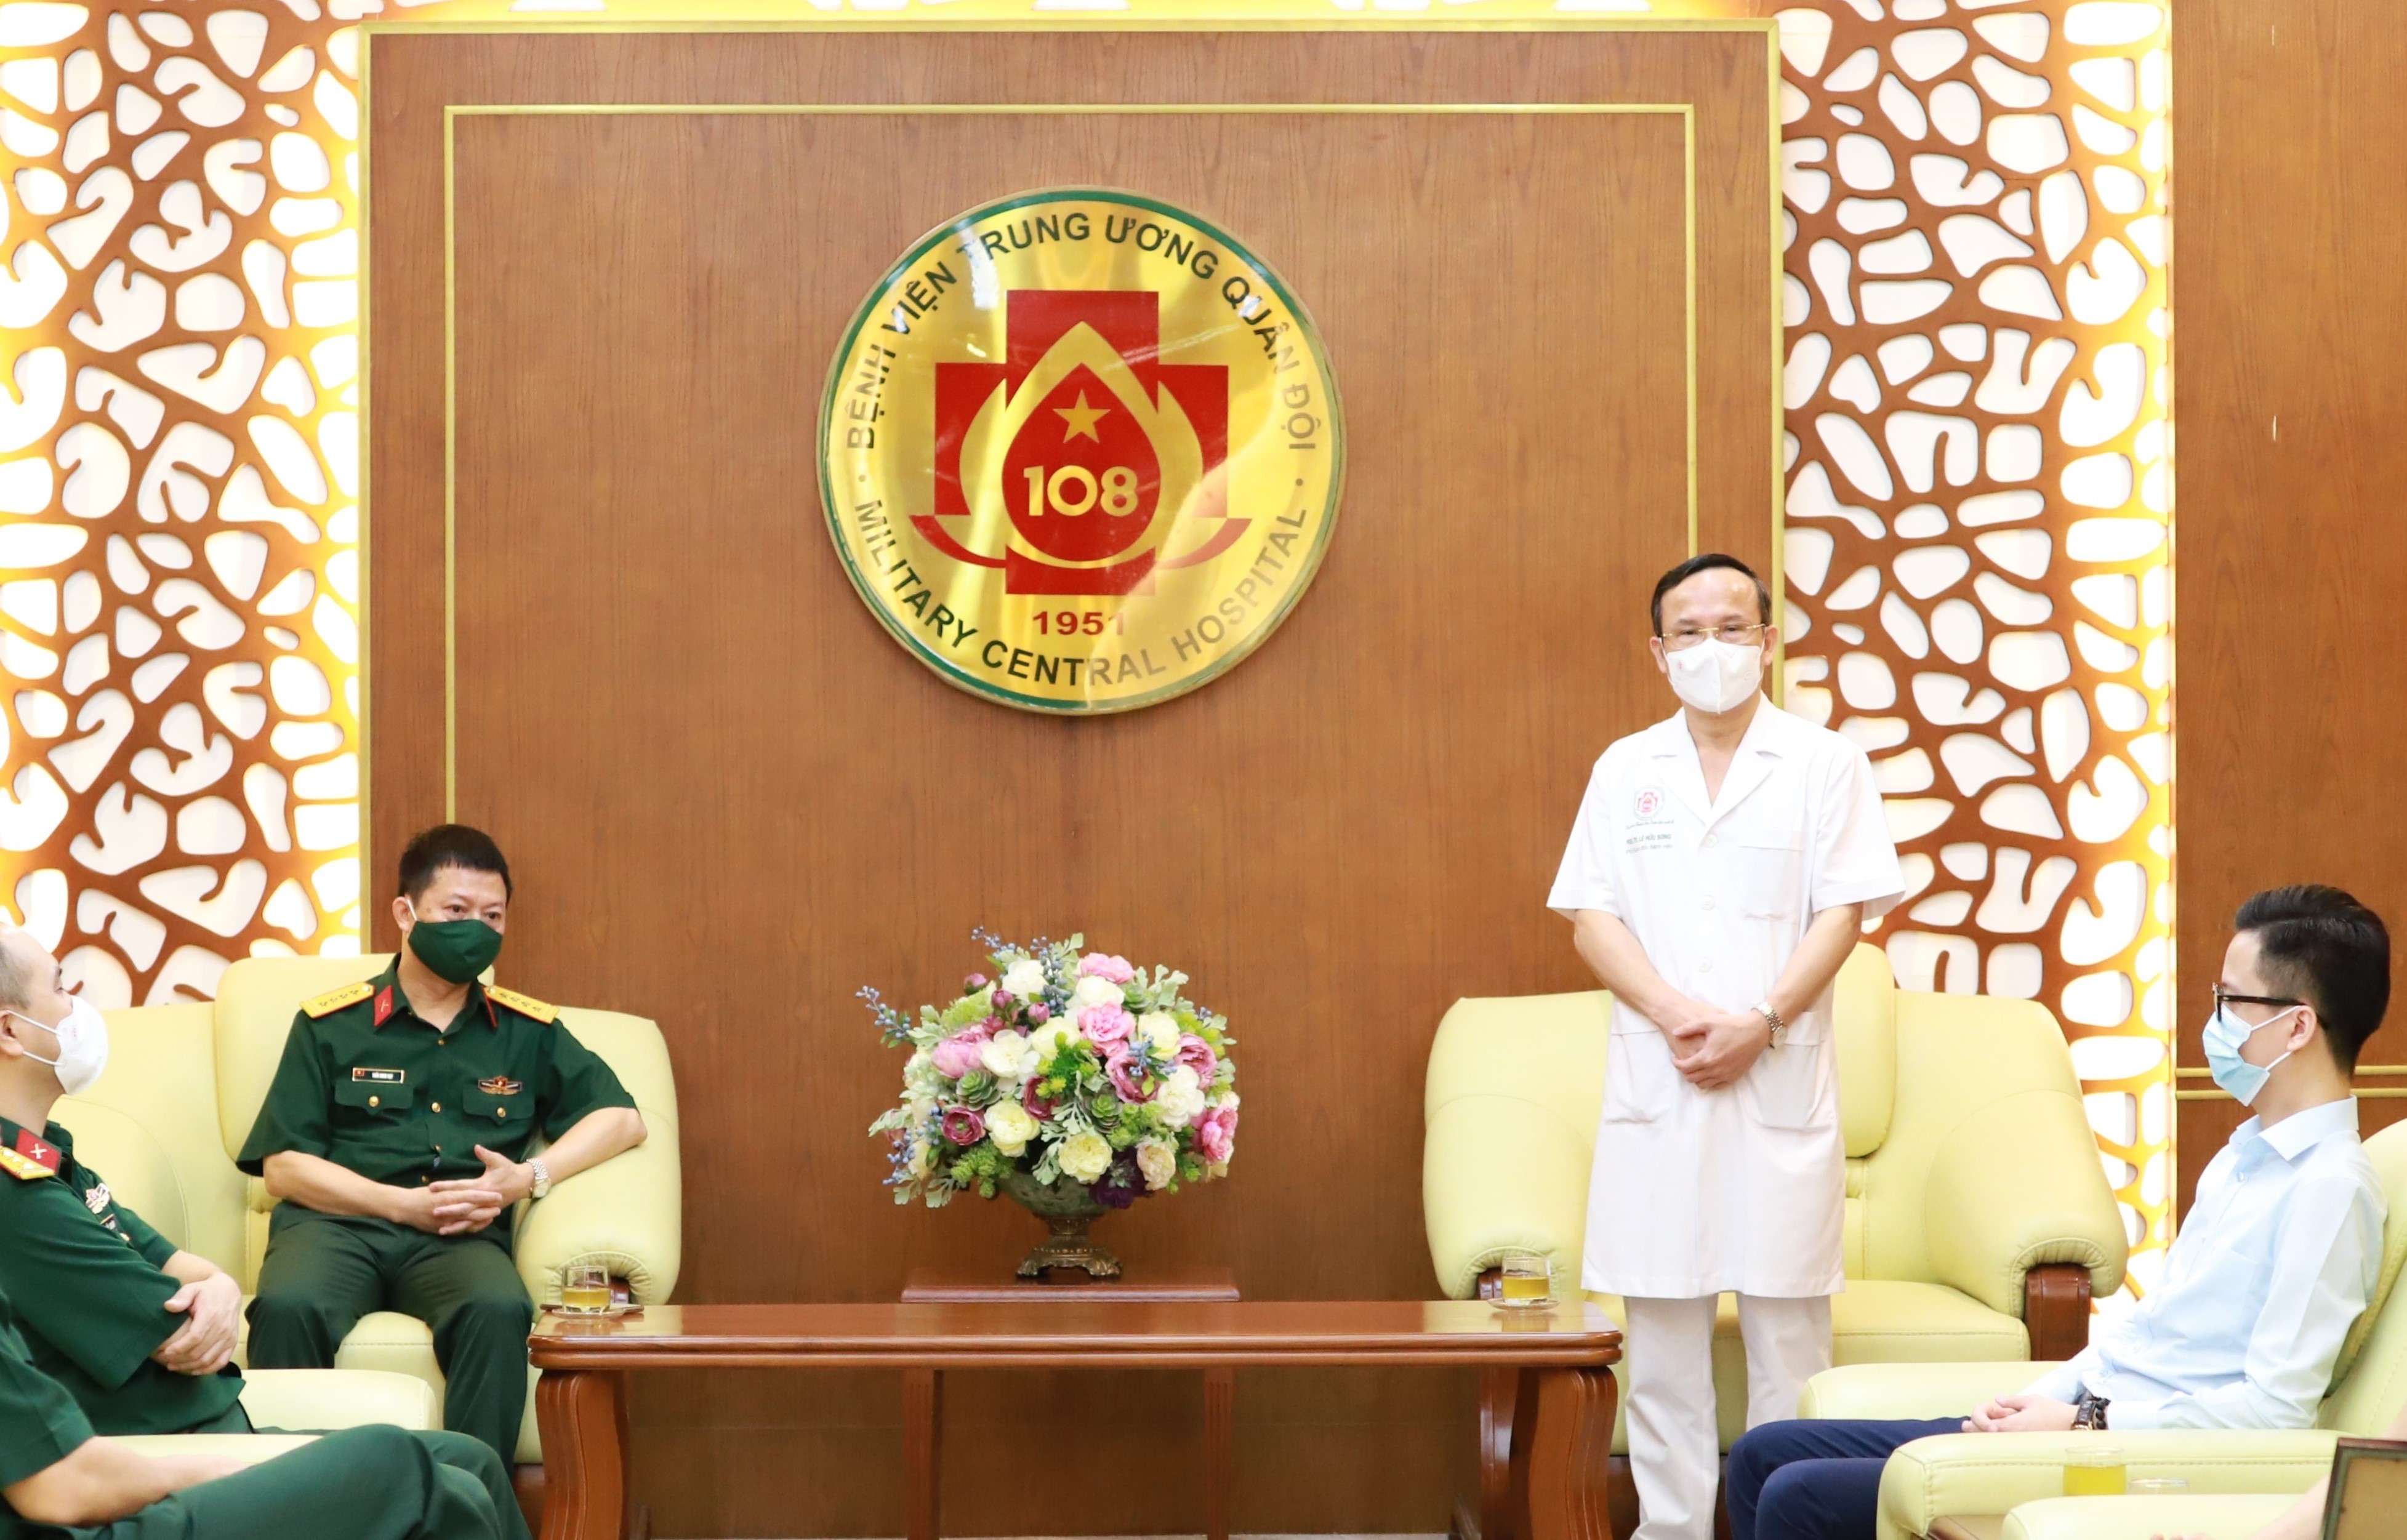 Đại tá, PGS.TS Lê Hữu Song – Phó giám đốc Bệnh viện Trung ương Quân đội 108 bày tỏ lời tri ân đến Ban lãnh đạo và toàn thể cán bộ nhân viên MB